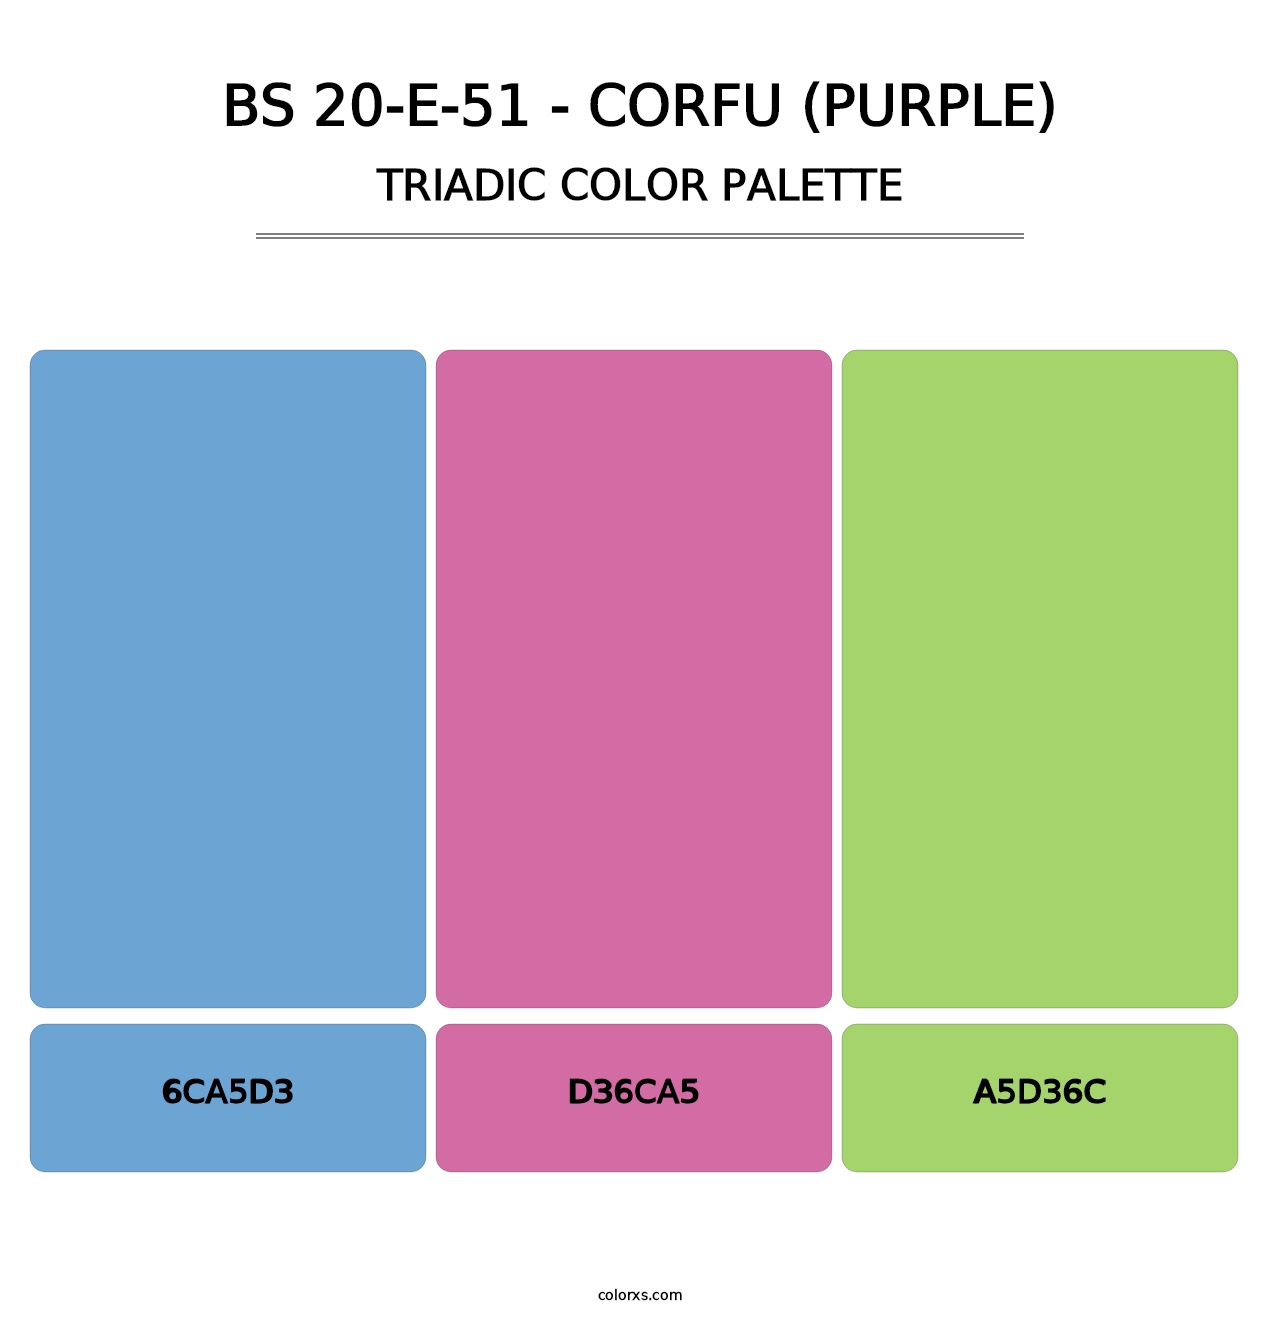 BS 20-E-51 - Corfu (Purple) - Triadic Color Palette